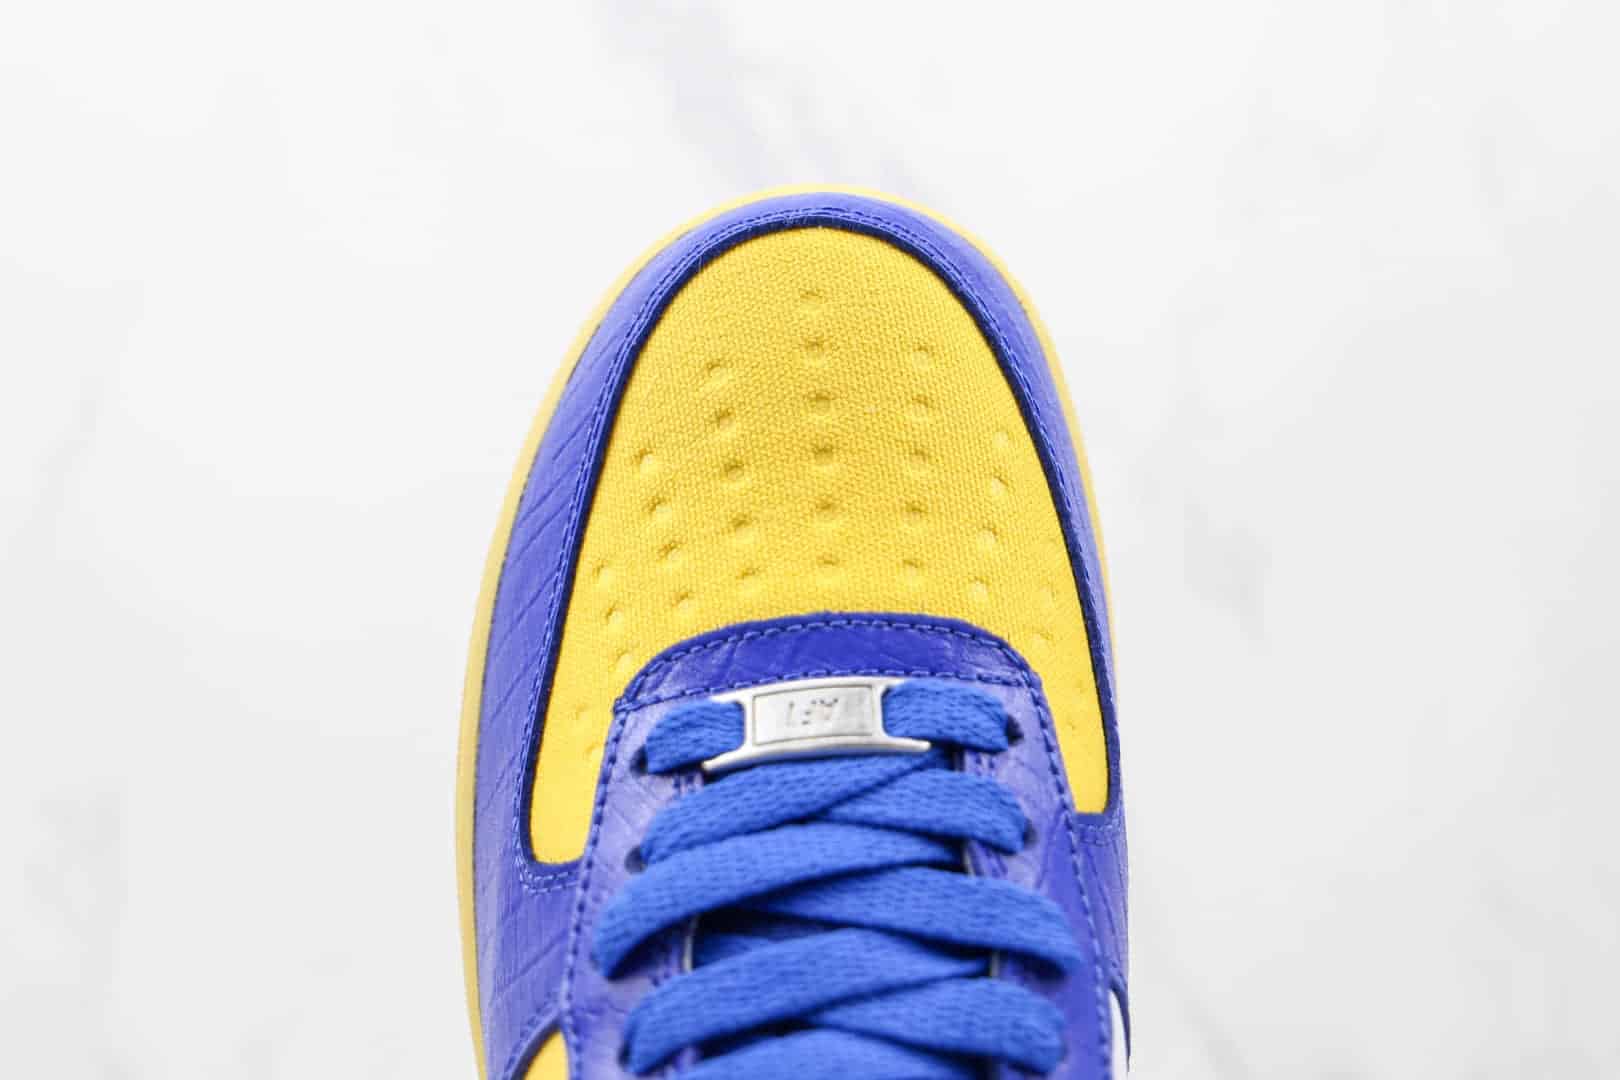 耐克Nike Air Force 1 Dunk vs AF-1 x Undefeated联名款低帮空军一号蓝黄色板鞋 DM8462-400 - 耐克空军一号蓝黄色板鞋, 耐克AF1, 空军一号蓝黄色, 低帮空军一号, Nike Air Force 1, Nike, DM8462-400, Air Force 1